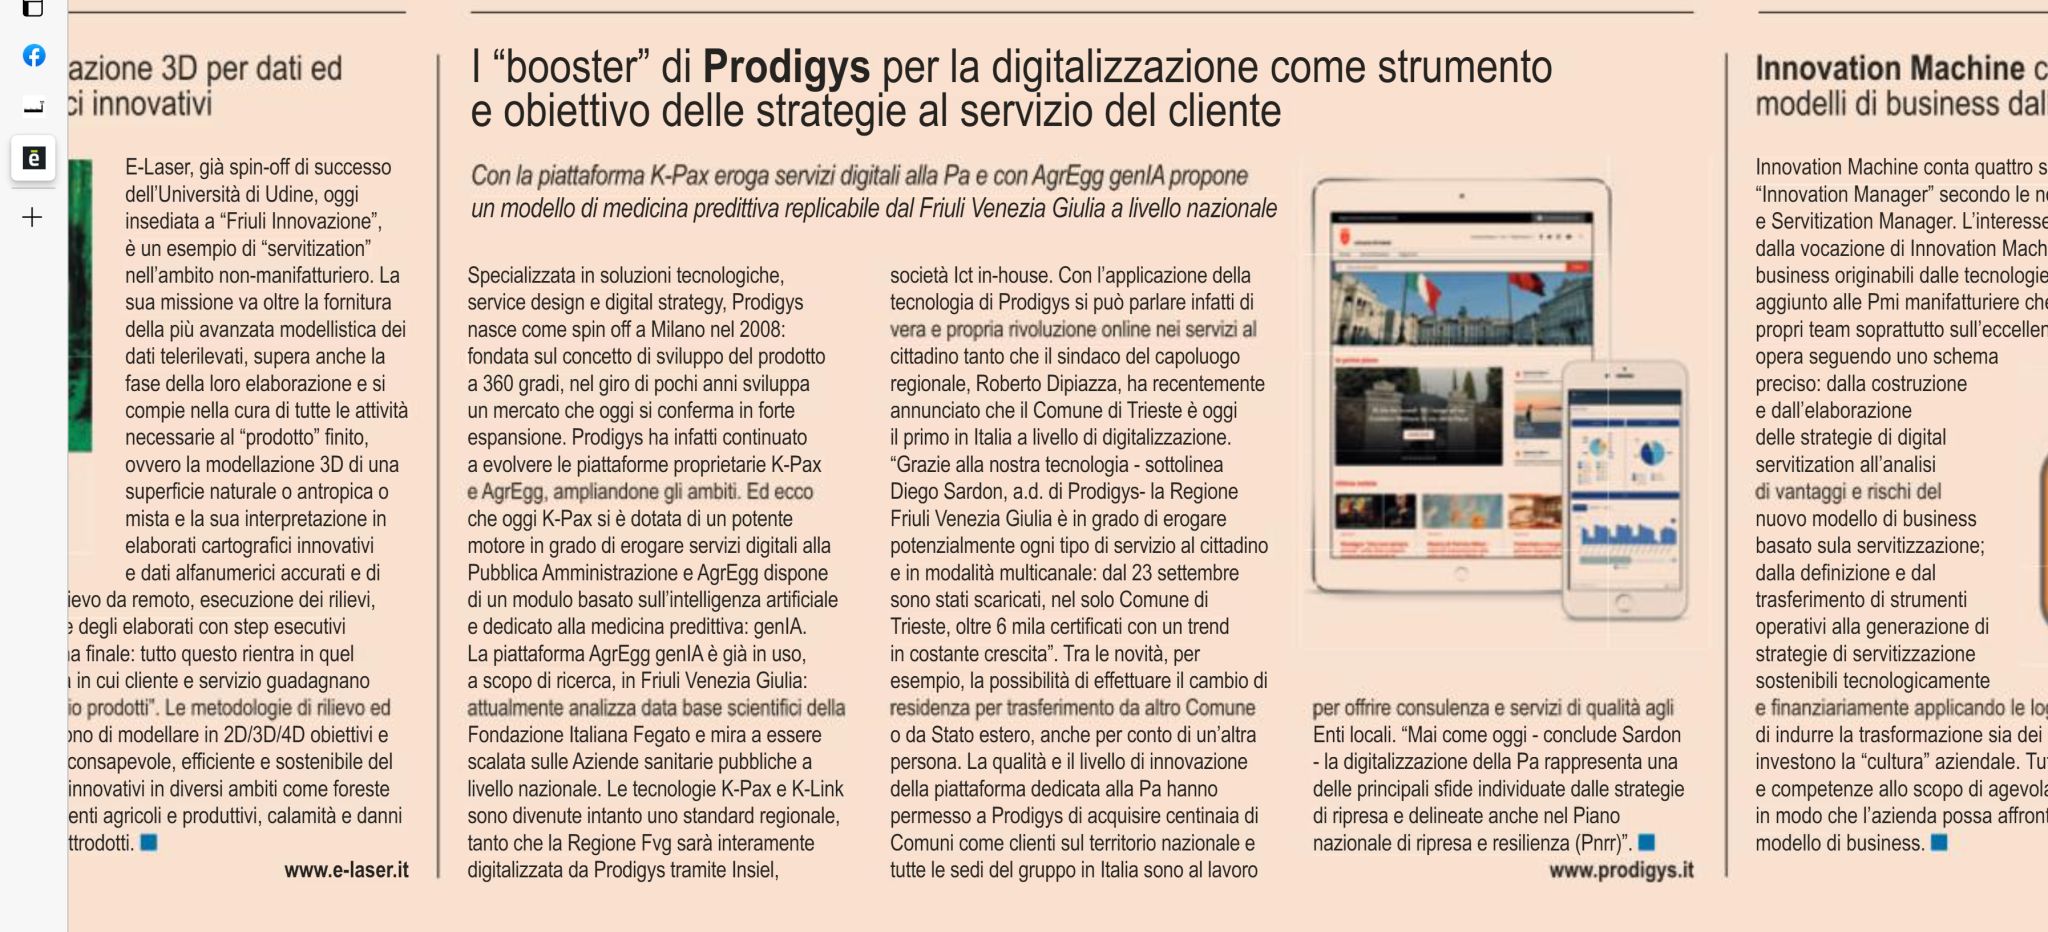 I booster di Prodigys per la digitalizzazione